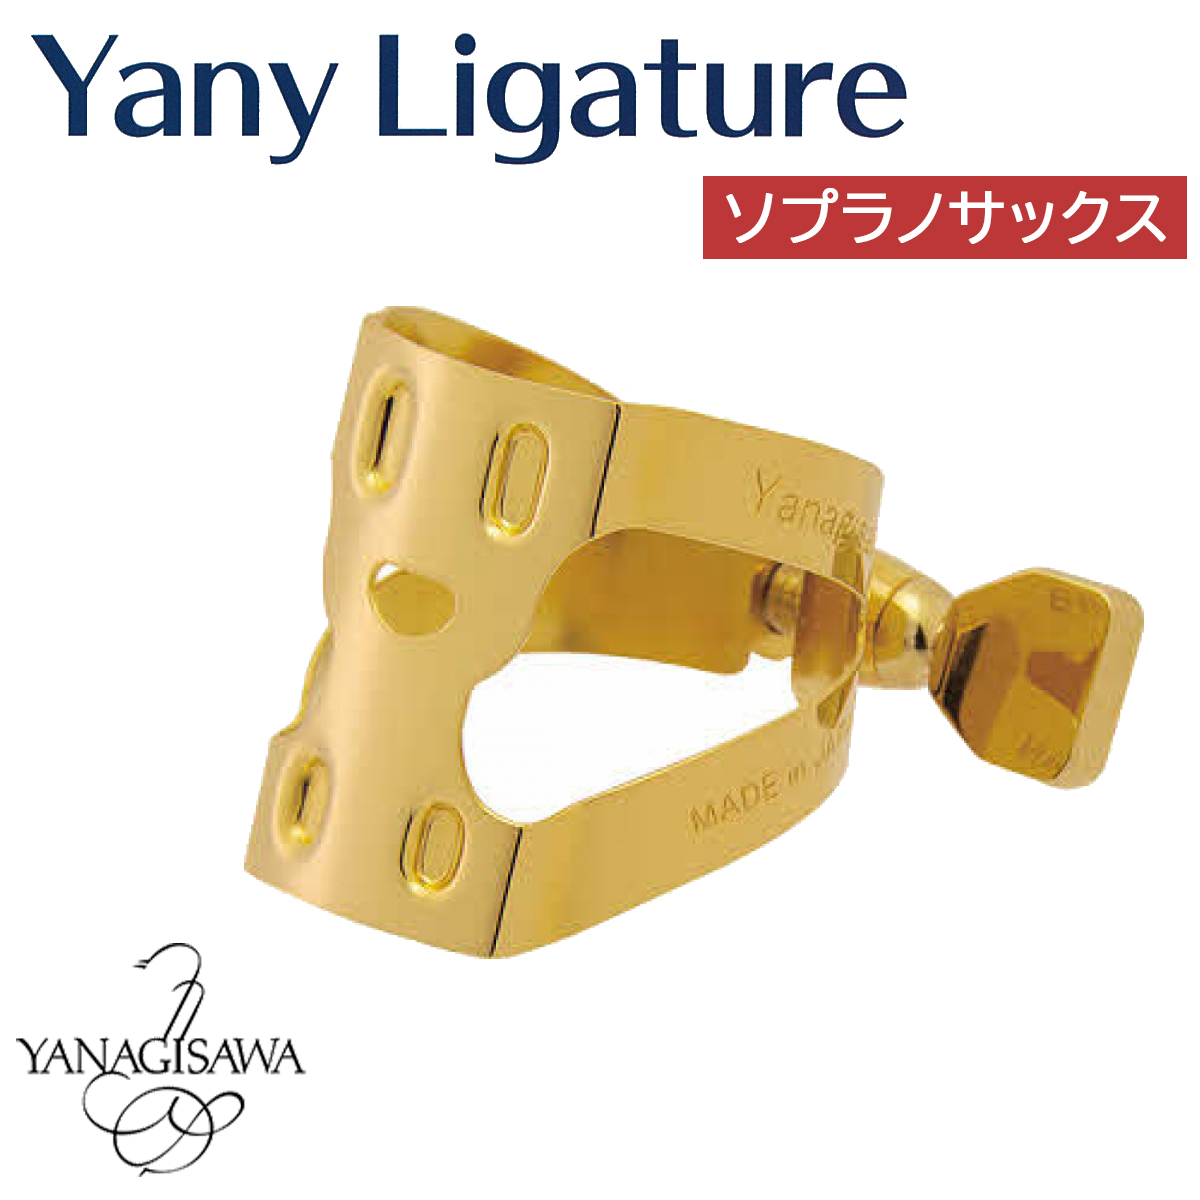 YANAGISAWA Yany Ligature ソプラノサックス用 ヤニー・ニコちゃん